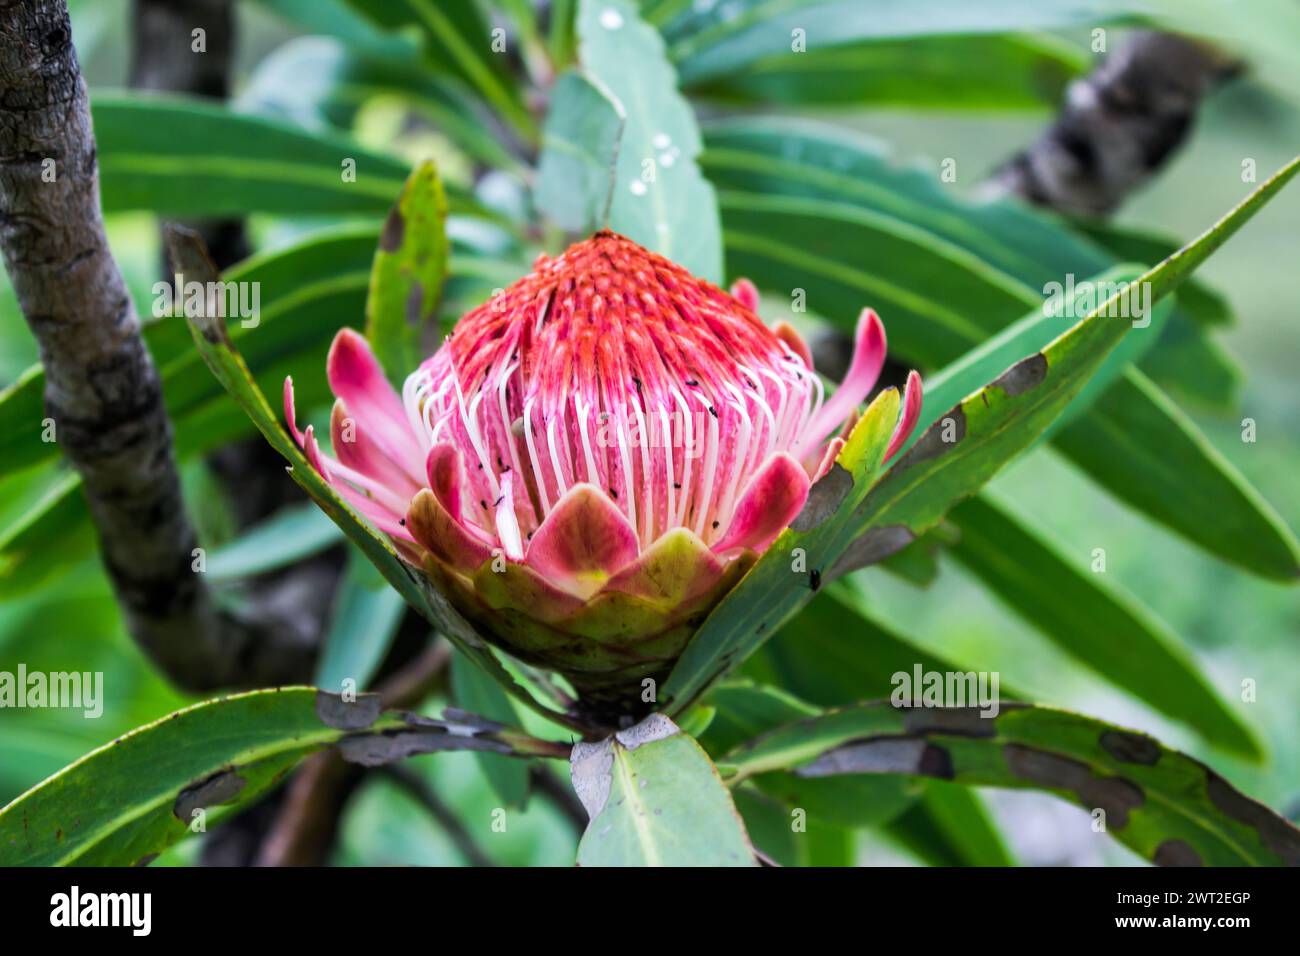 Beautiful open flower of a common sugarbush protea Stock Photo